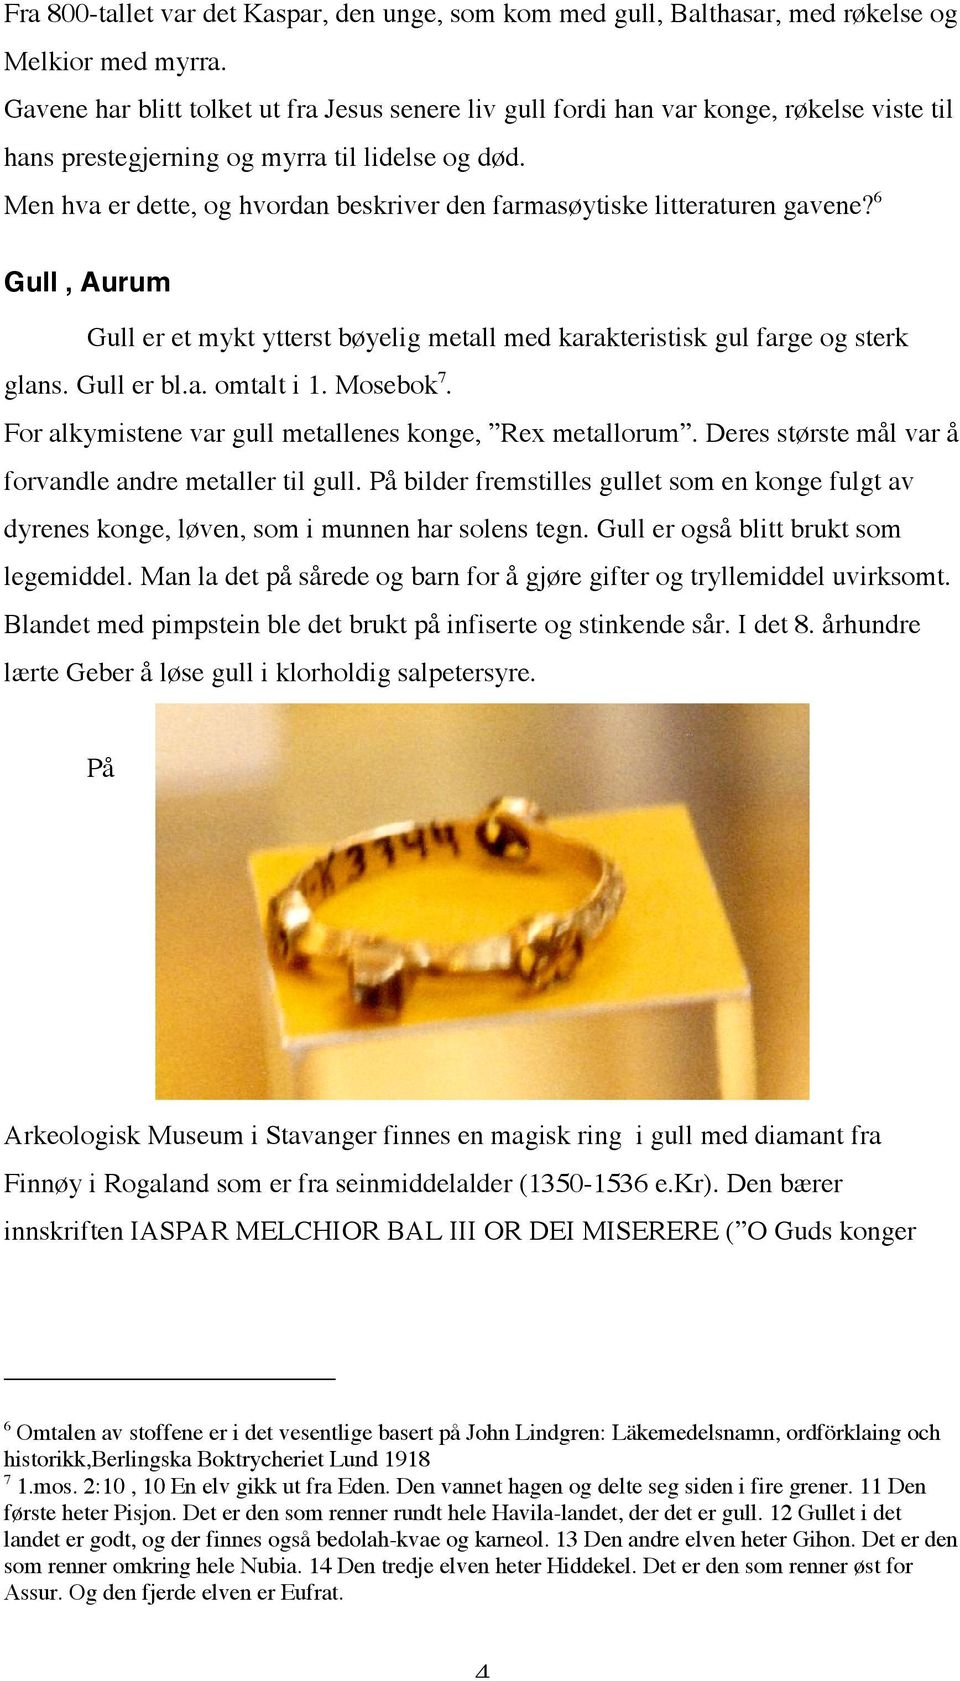 Men hva er dette, og hvordan beskriver den farmasøytiske litteraturen gavene? 6 Gull, Aurum Gull er et mykt ytterst bøyelig metall med karakteristisk gul farge og sterk glans. Gull er bl.a. omtalt i 1.